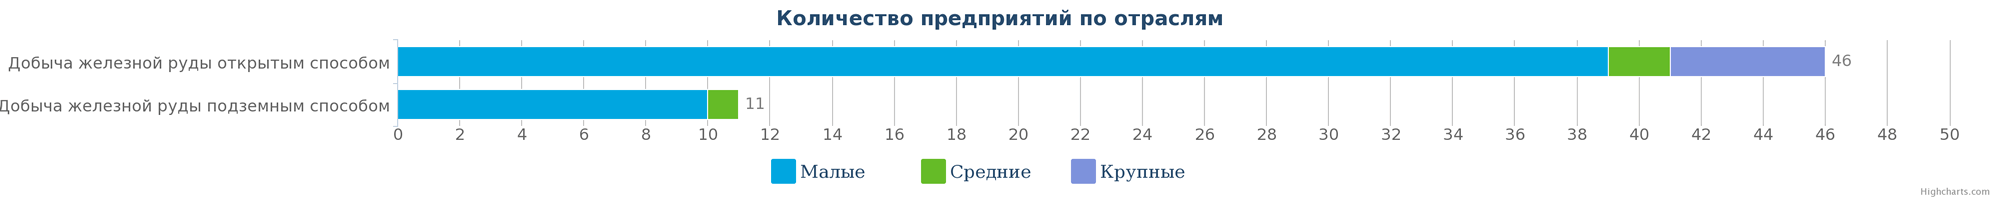 Количество компаний, занимающиеся добычей железной руды в Казахстане по размерам предприятия на 09.01.2017